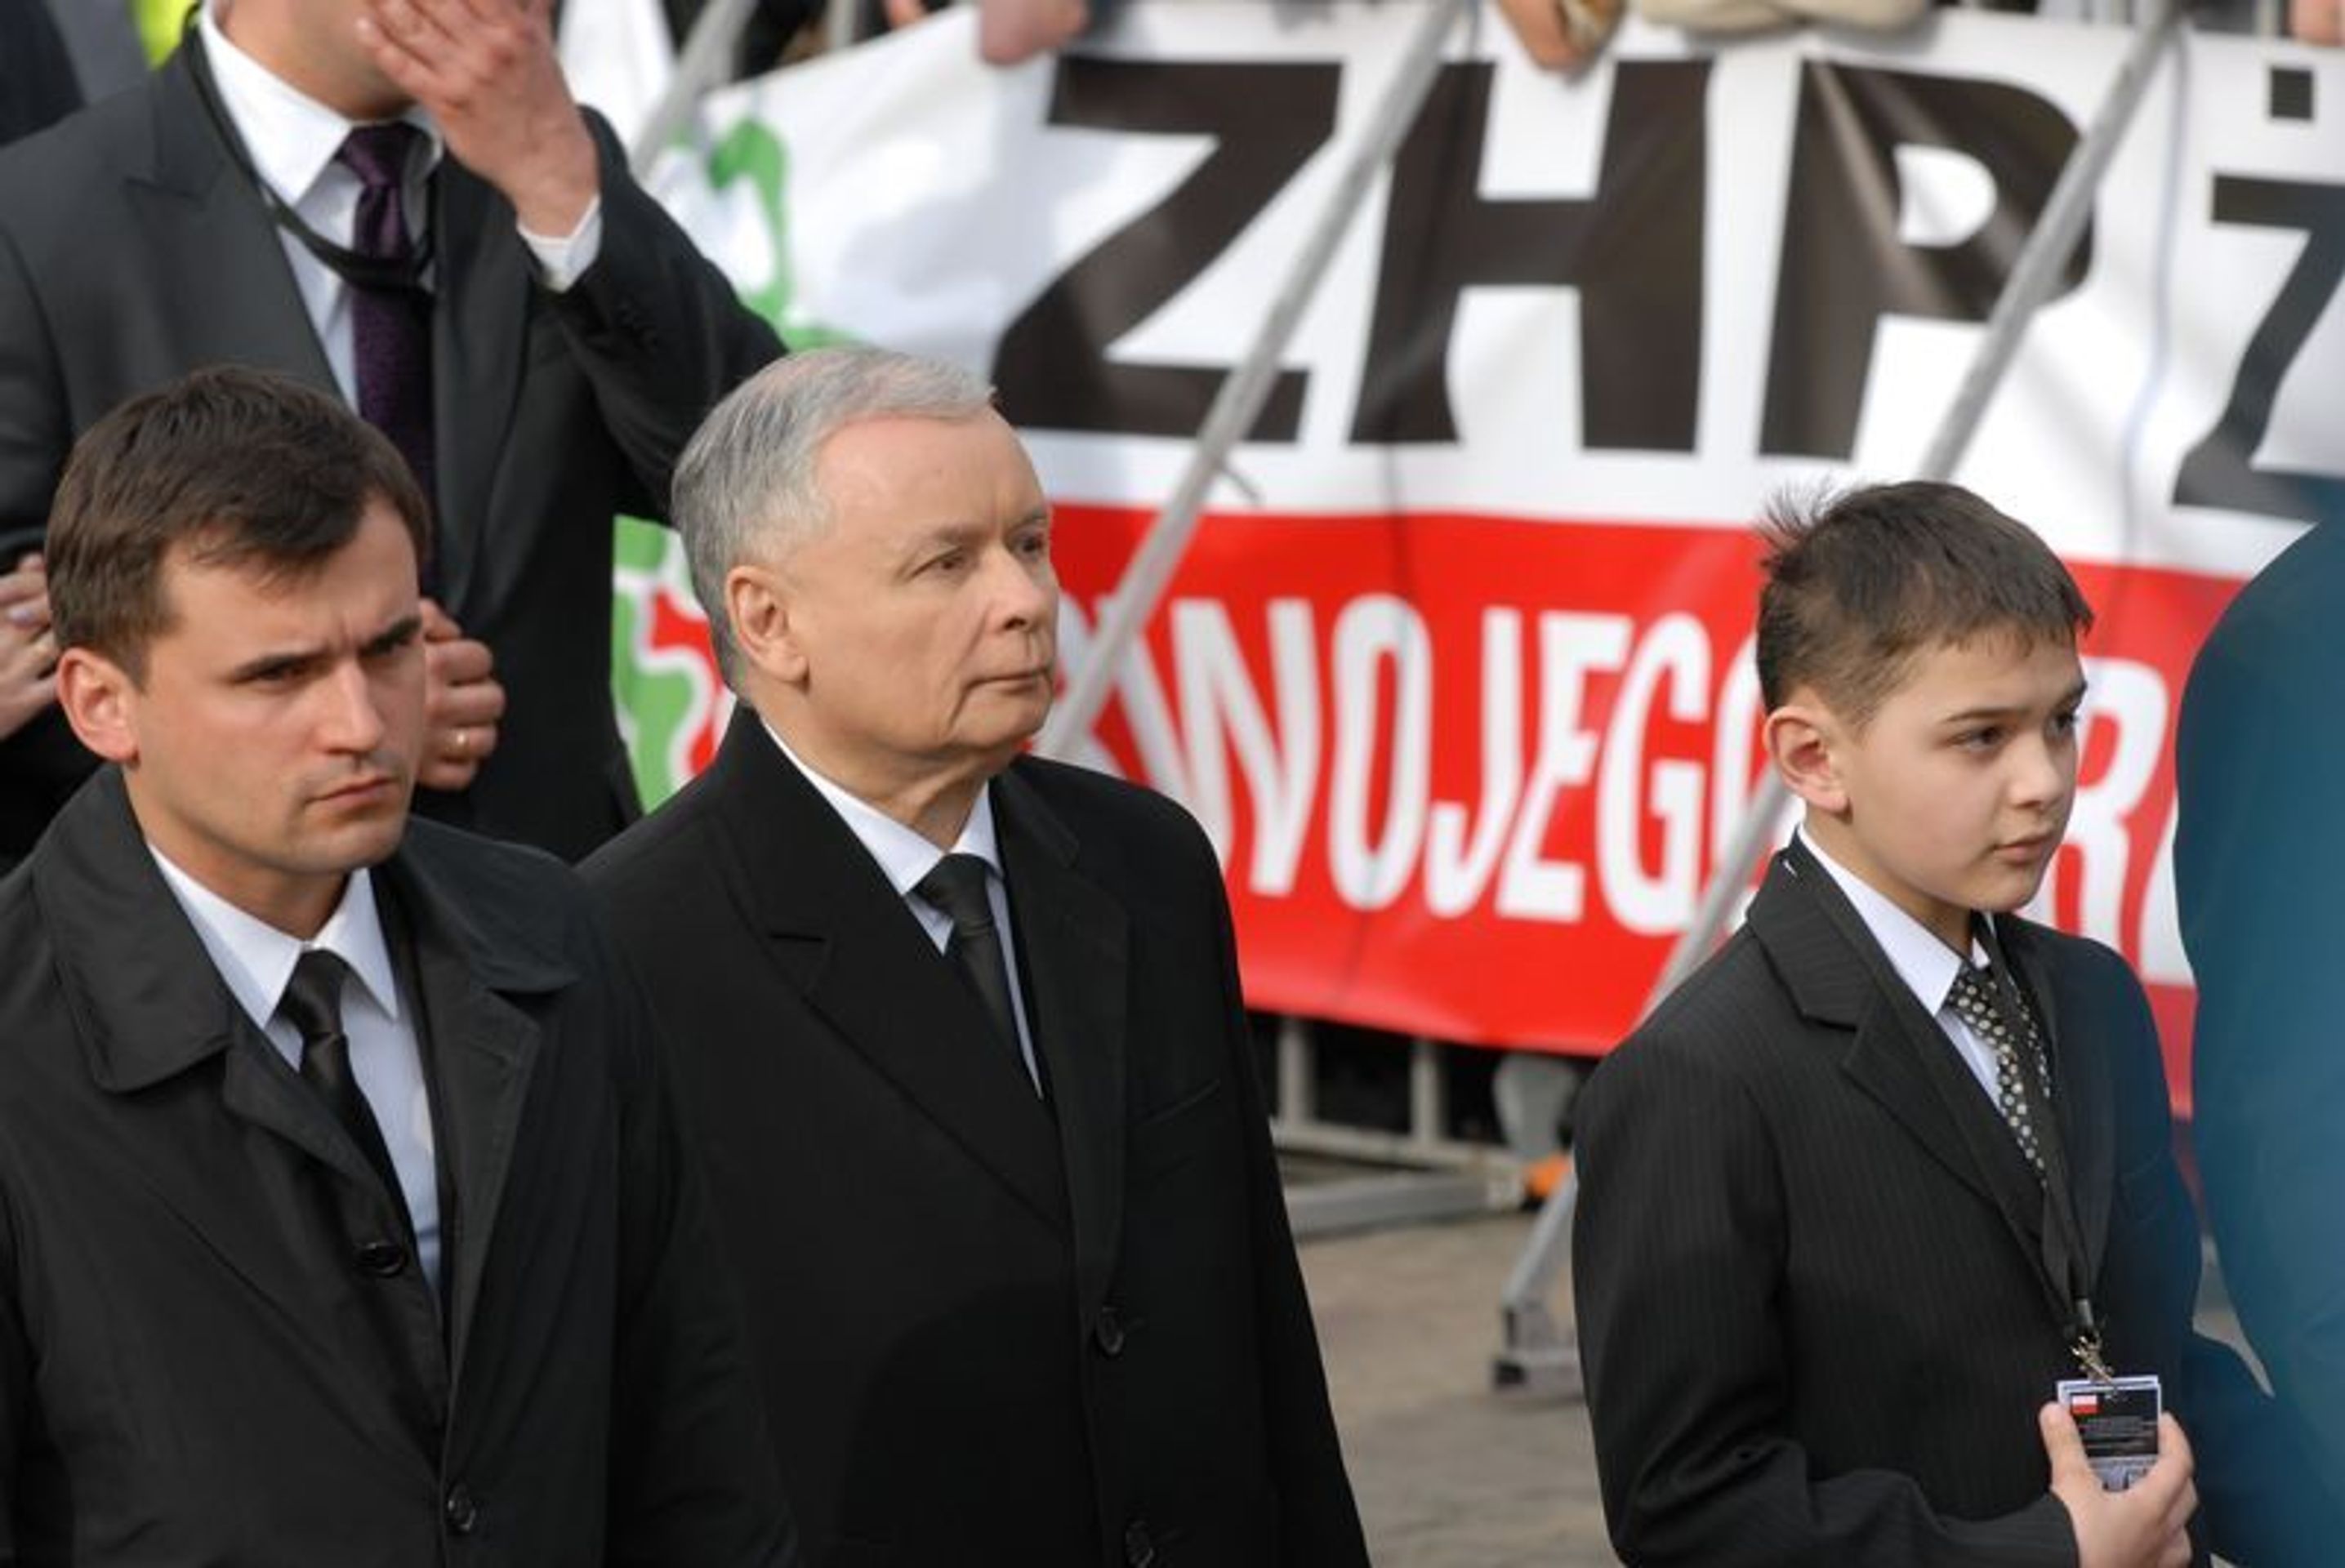 Polský pohřeb prezidentského páru-3 - GALERIE: Polský pohřeb prezidentského páru (3/8)